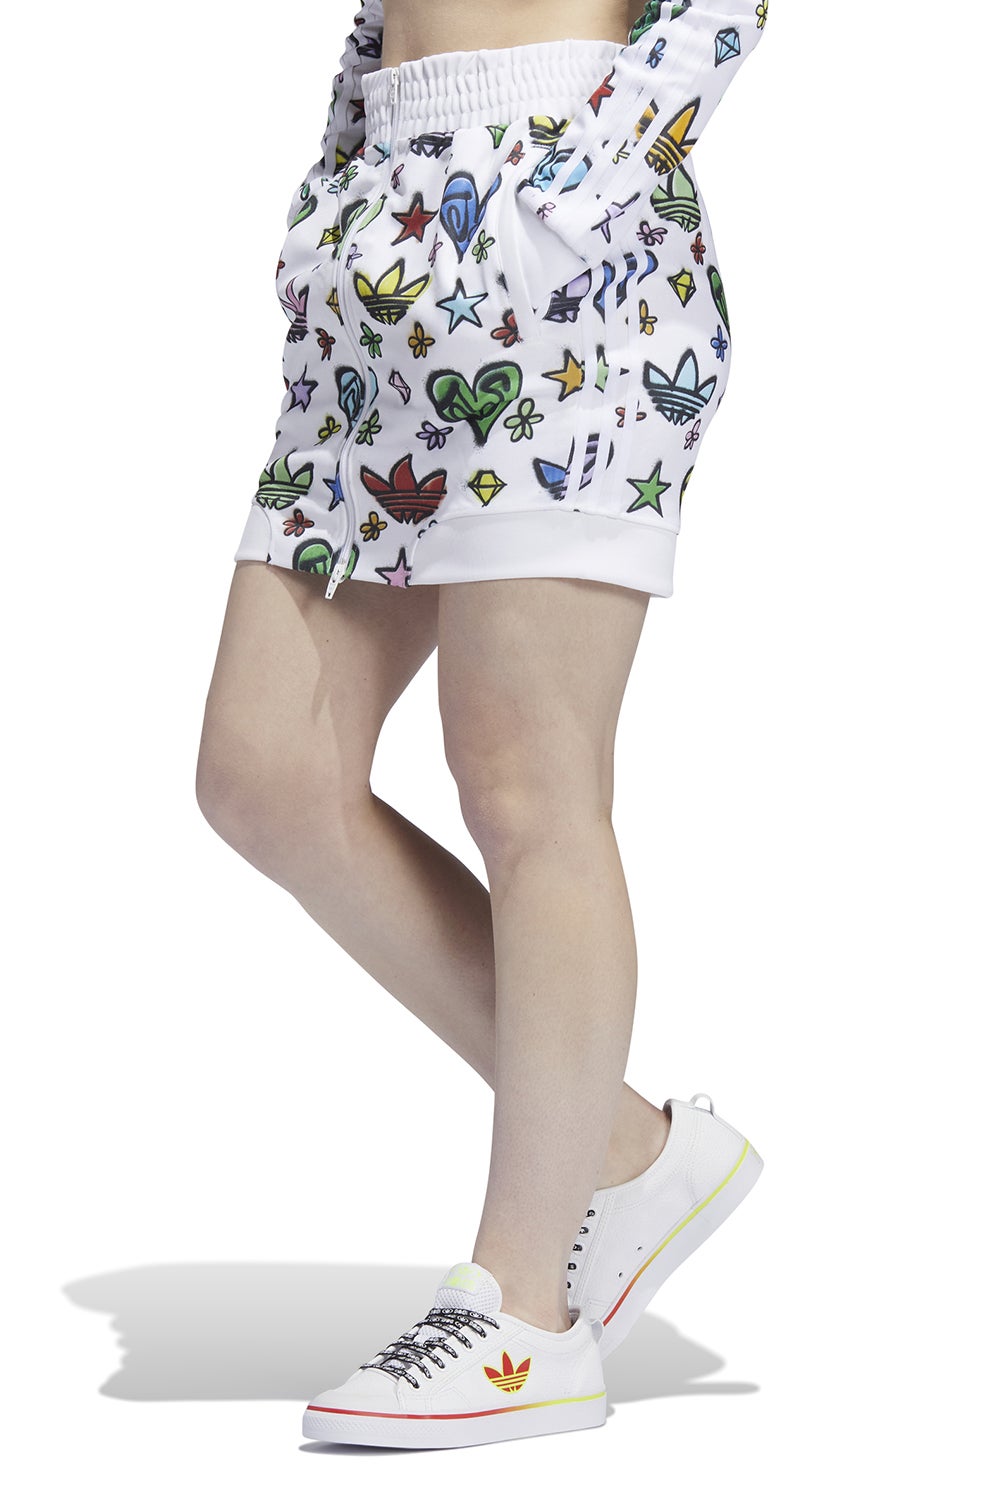 Adidas X Jeremy Scott Monogram Skirt White | Karen Walker